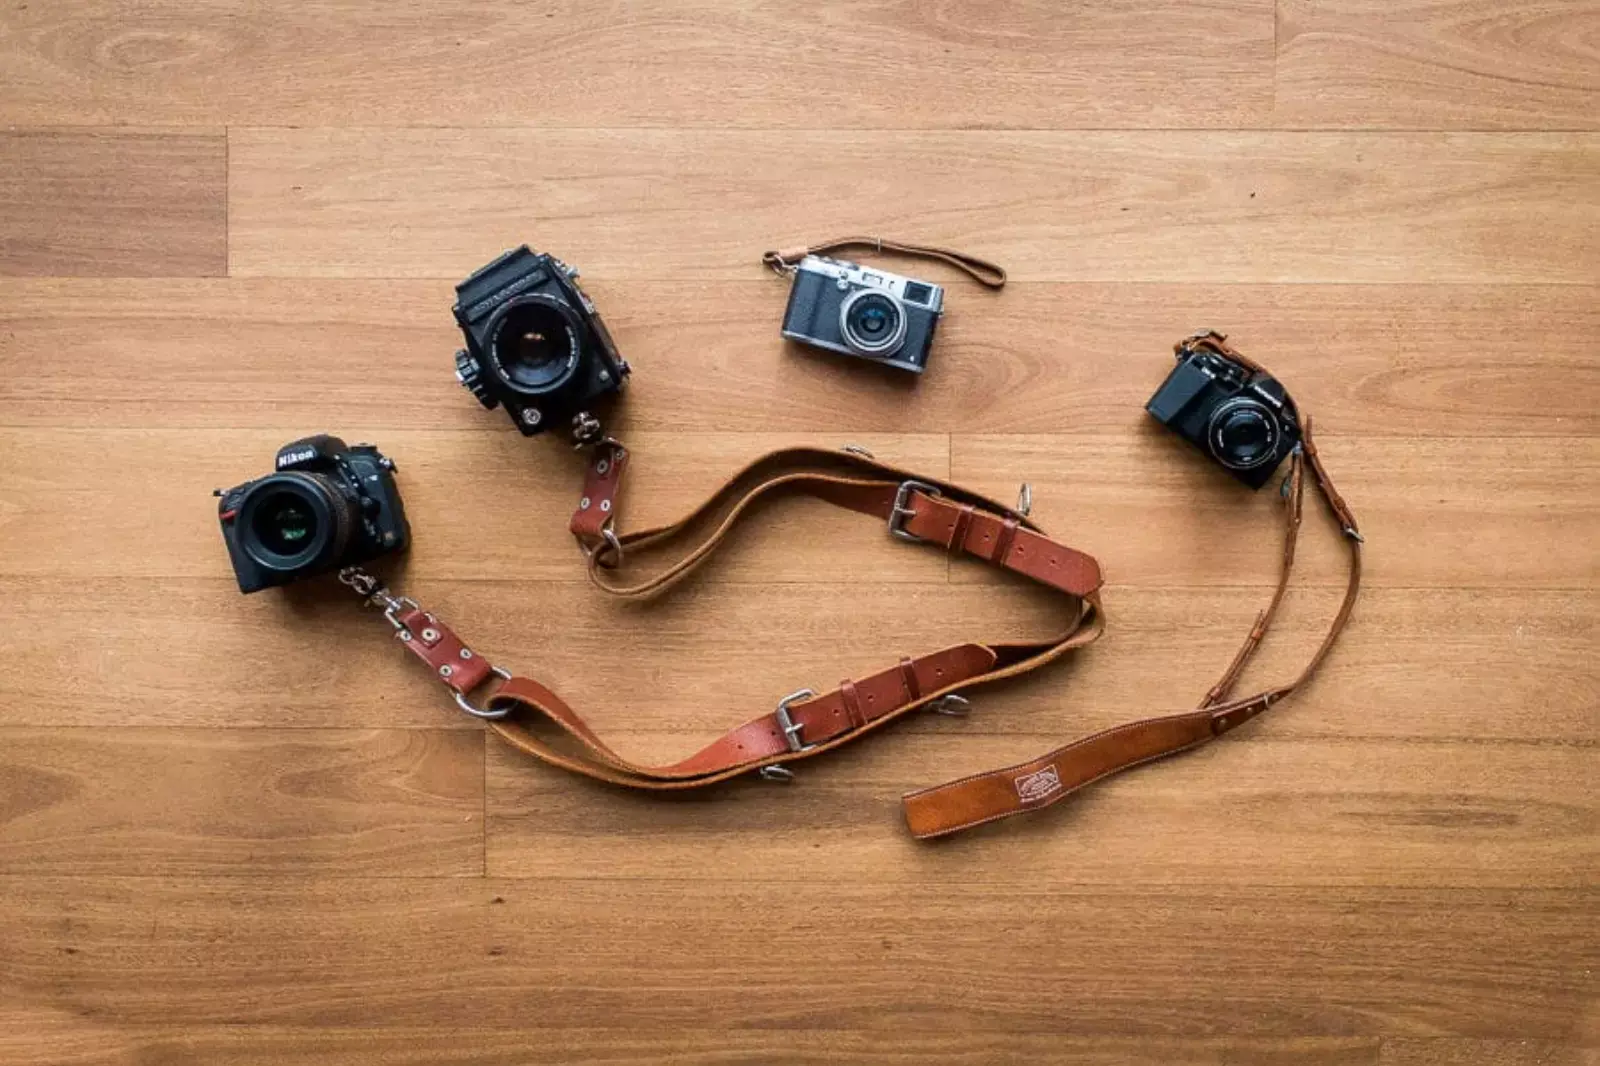 3. Camera straps